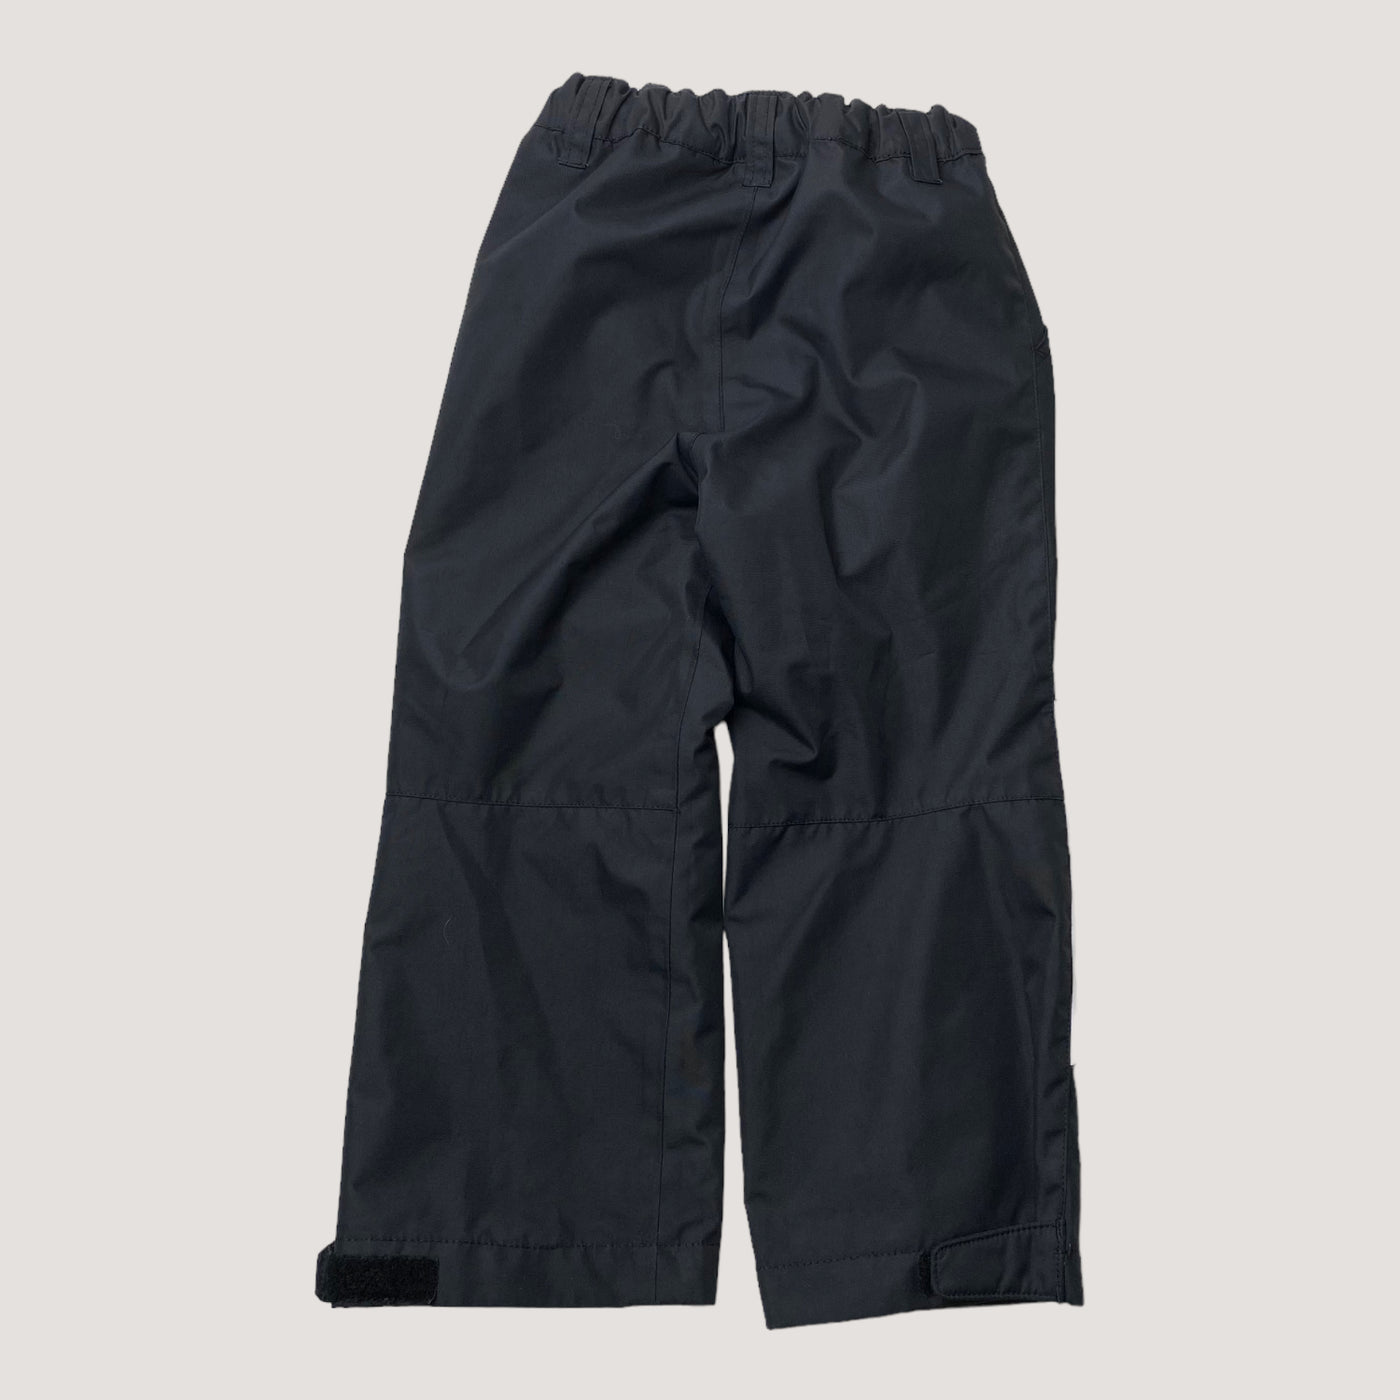 Reima outdoor pants, black | 104cm